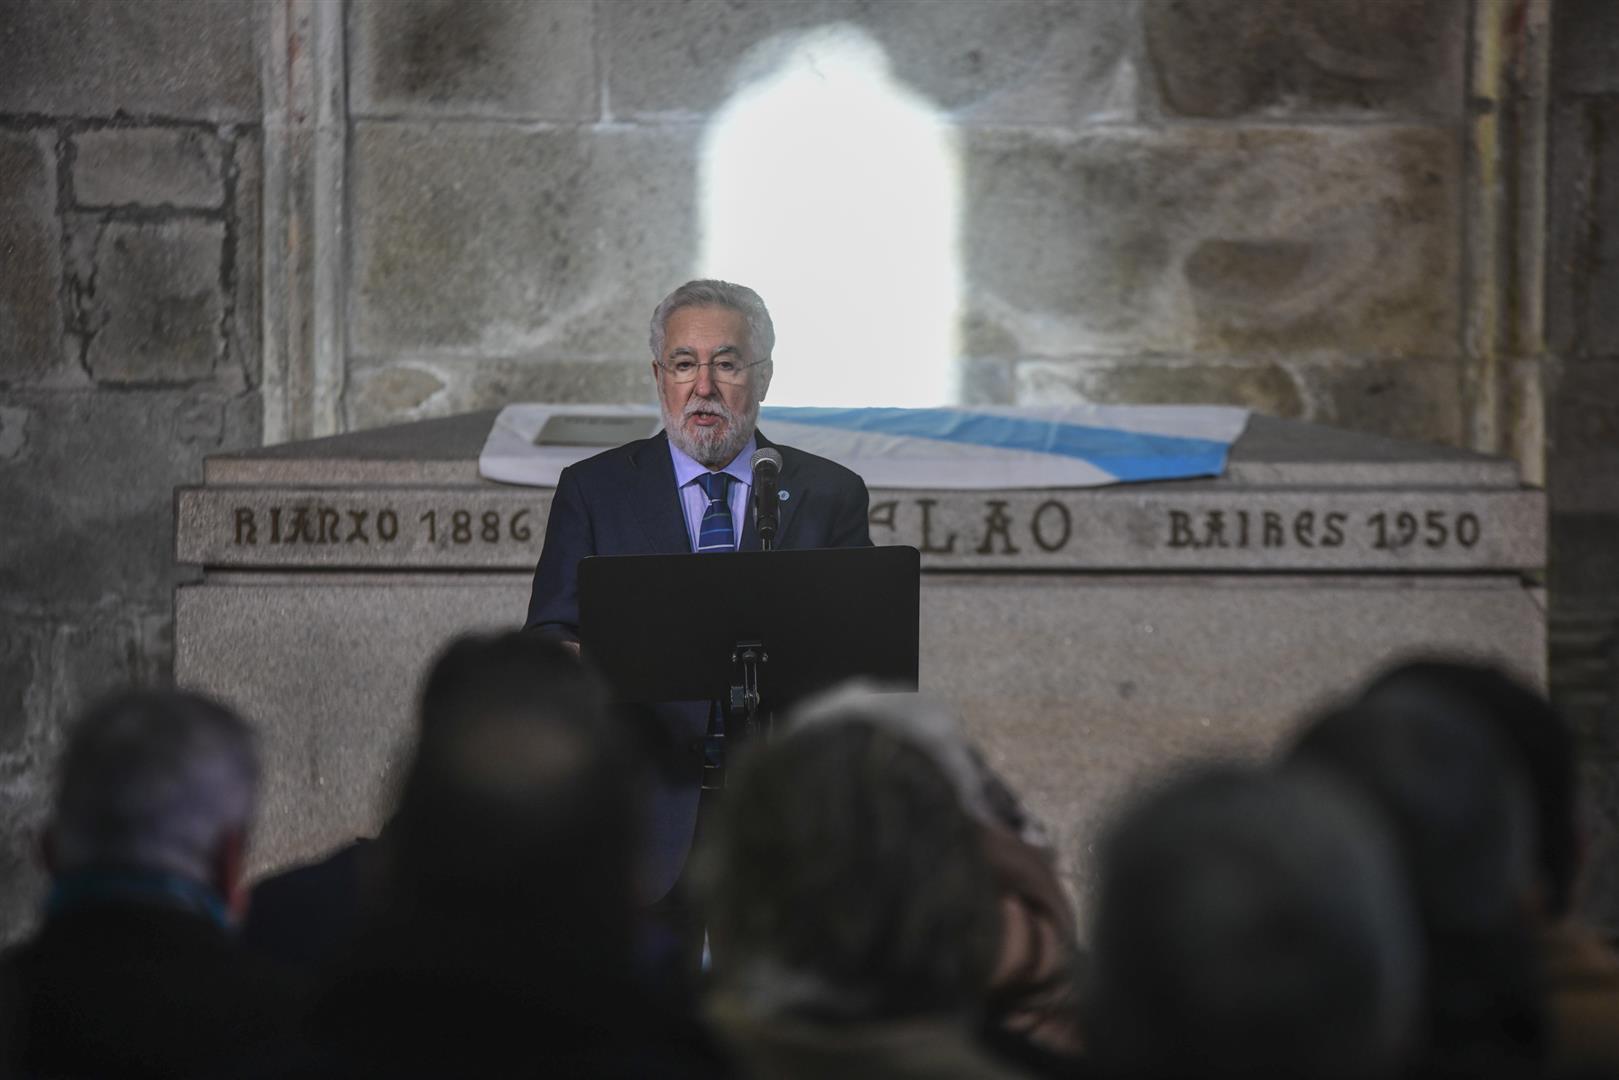 Foto da noticia:O Parlamento de Galicia organizará un acto de homenaxe a Castelao para recoñecer o seu papel como presidente do Consello de Galiza